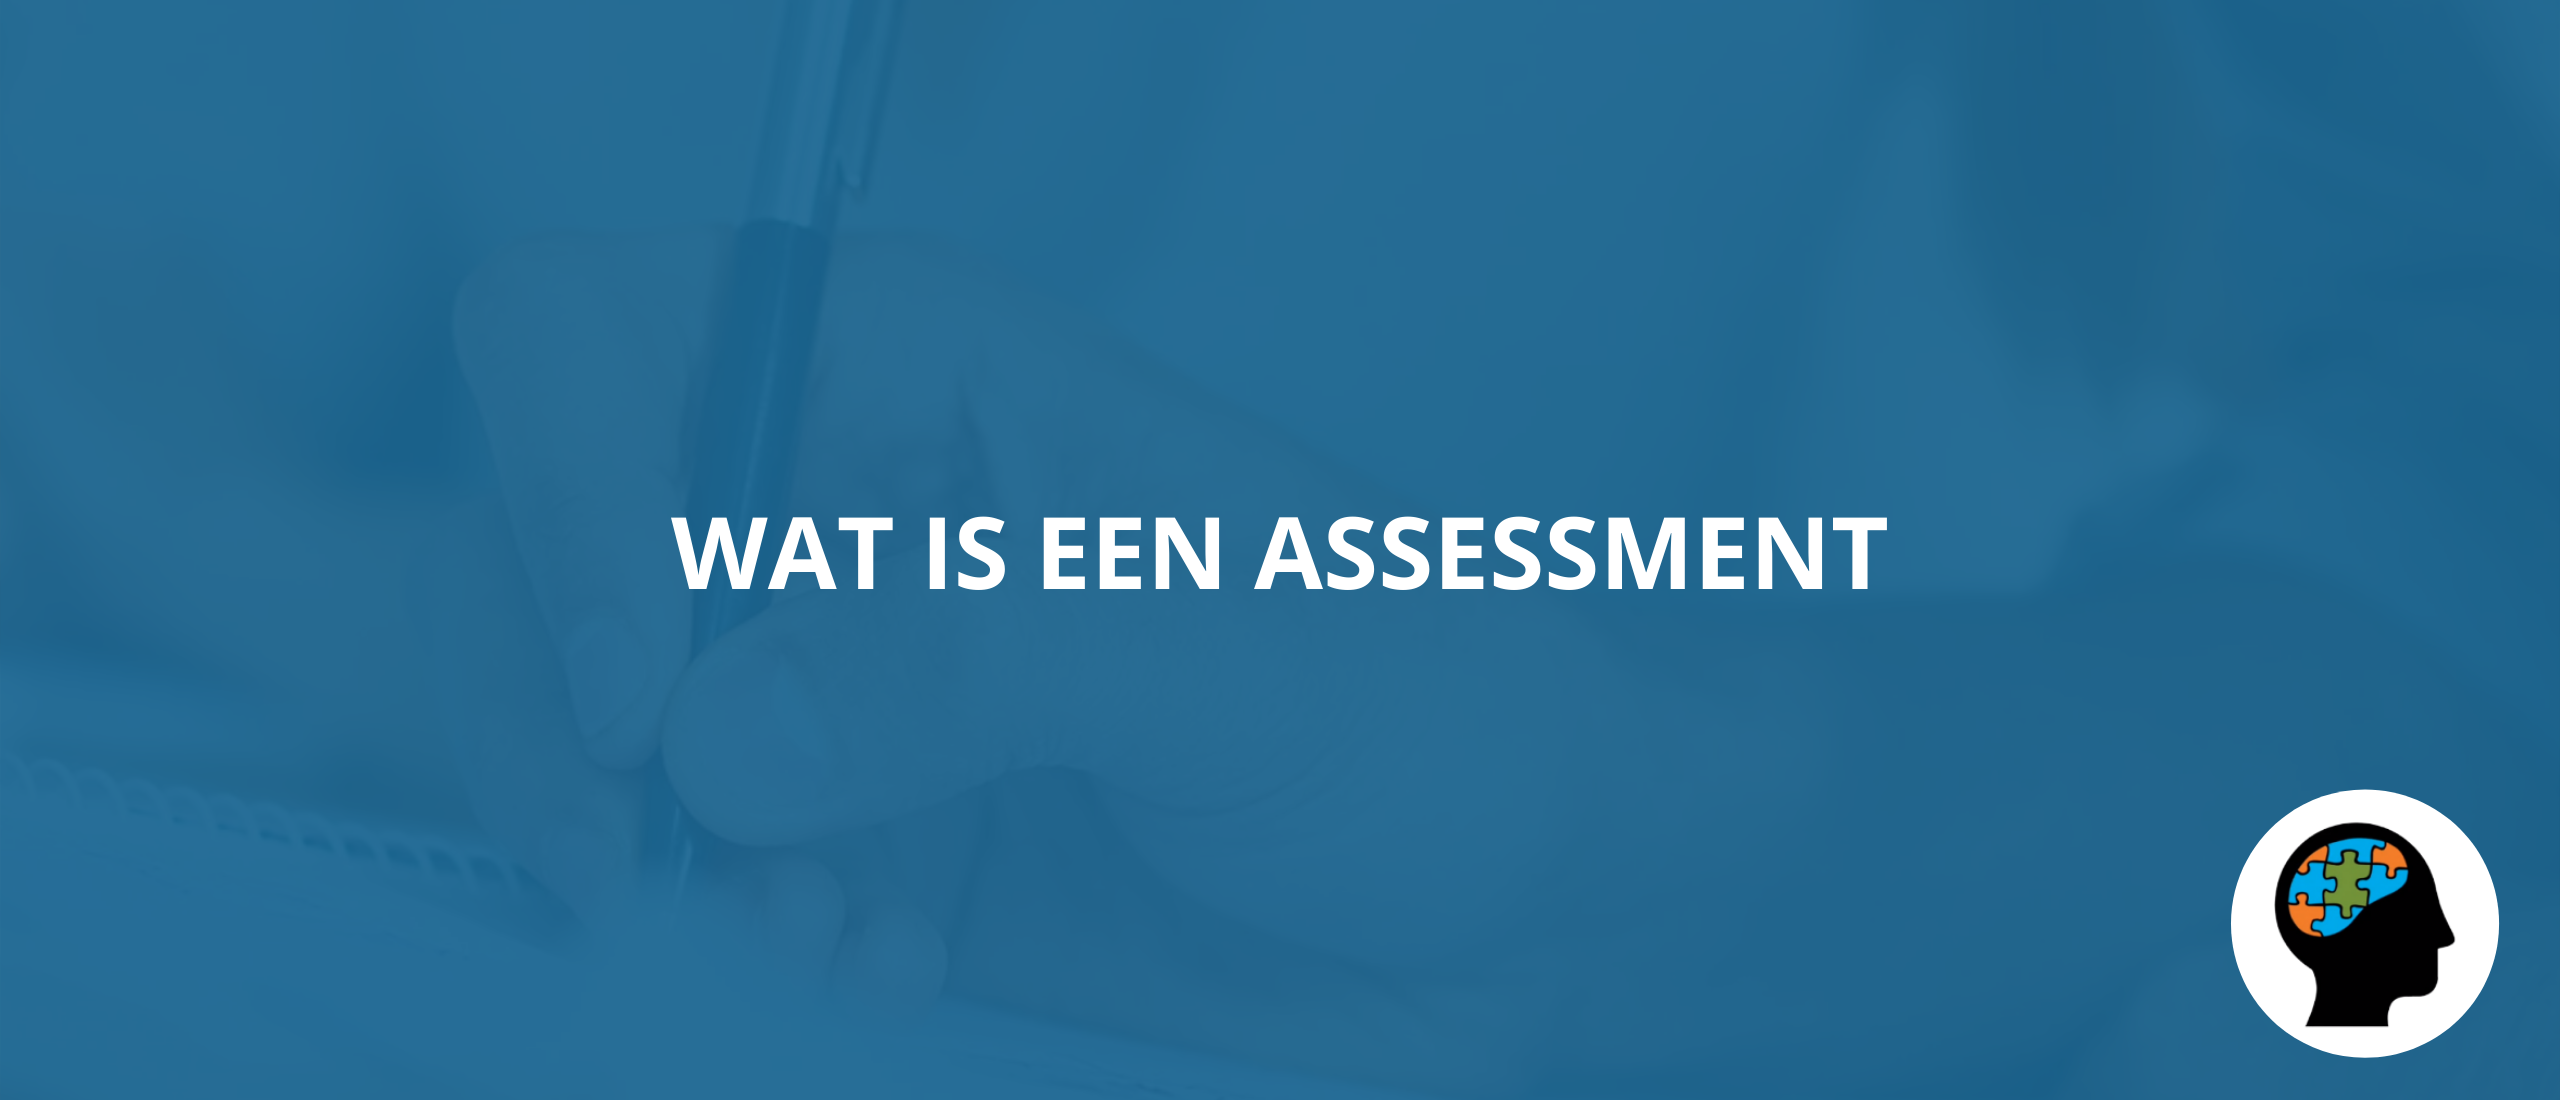 Wat is een assessment?